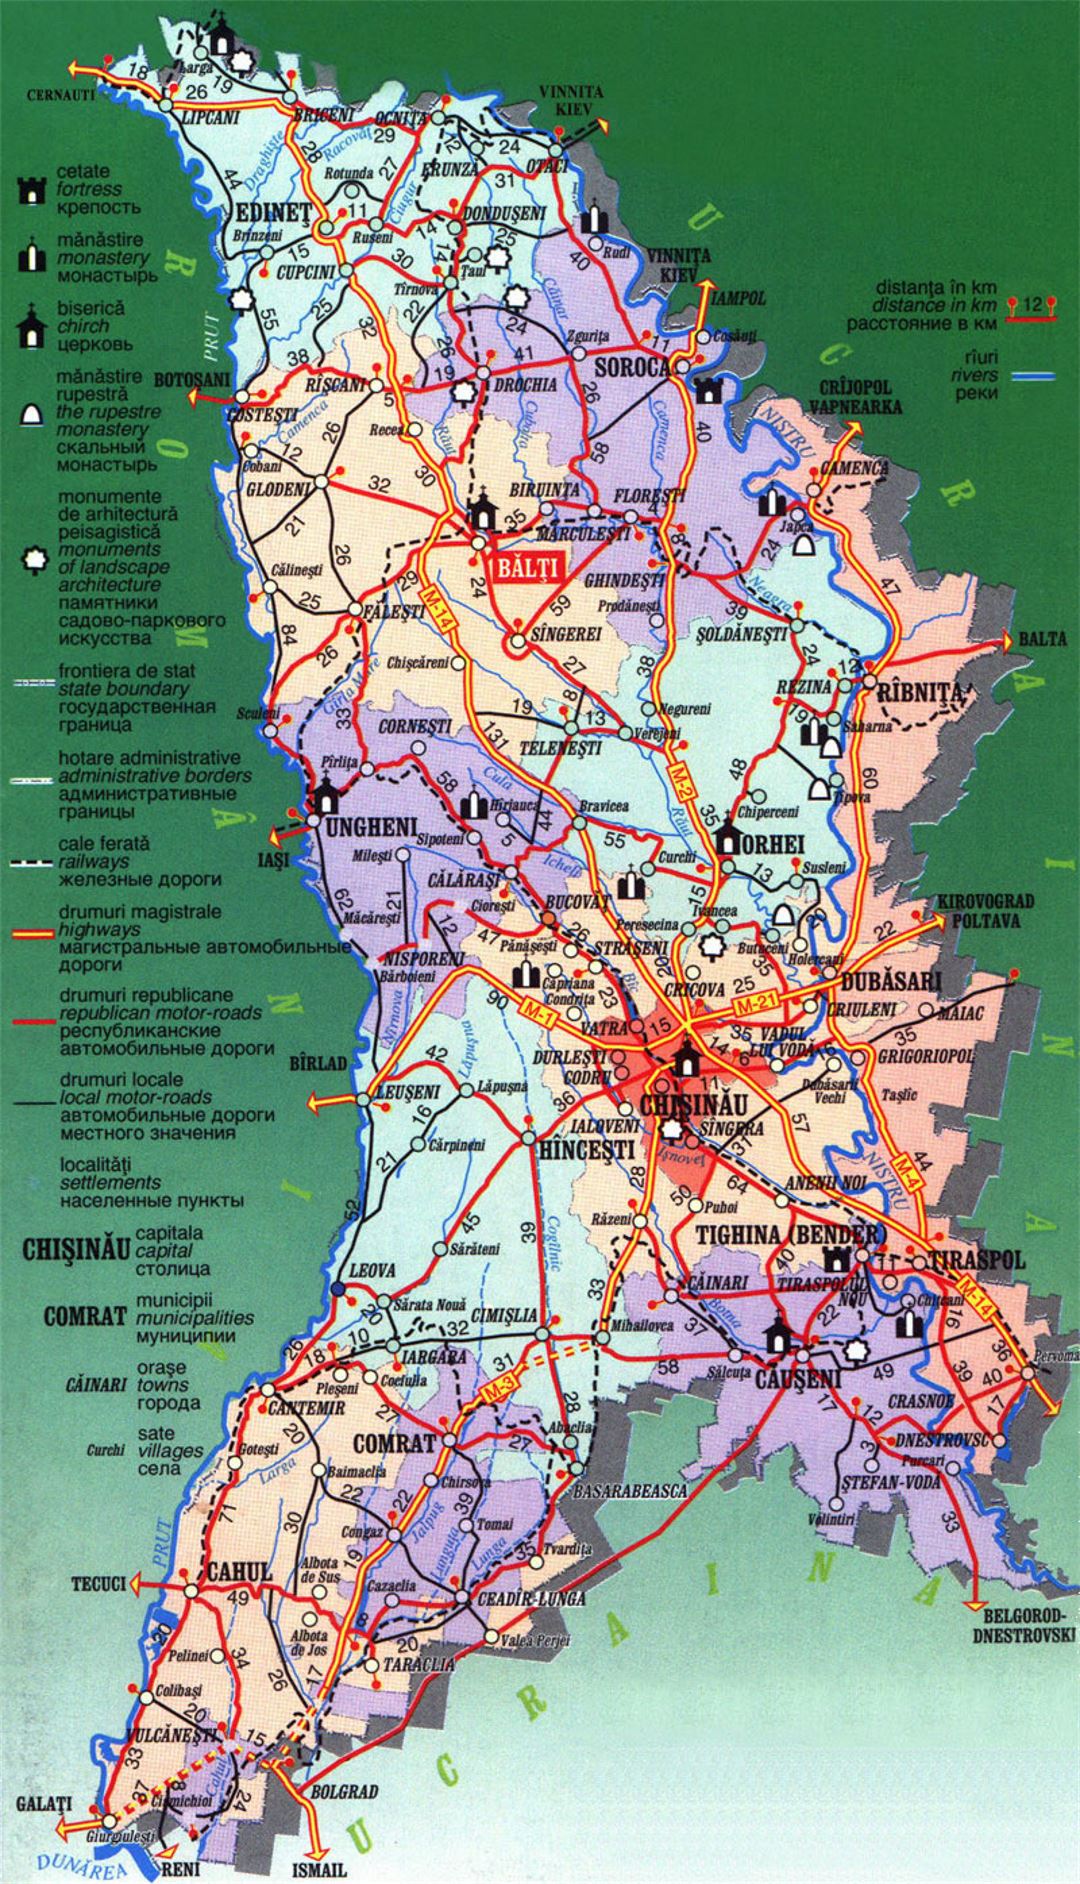 Detallado mapa turístico de Moldova